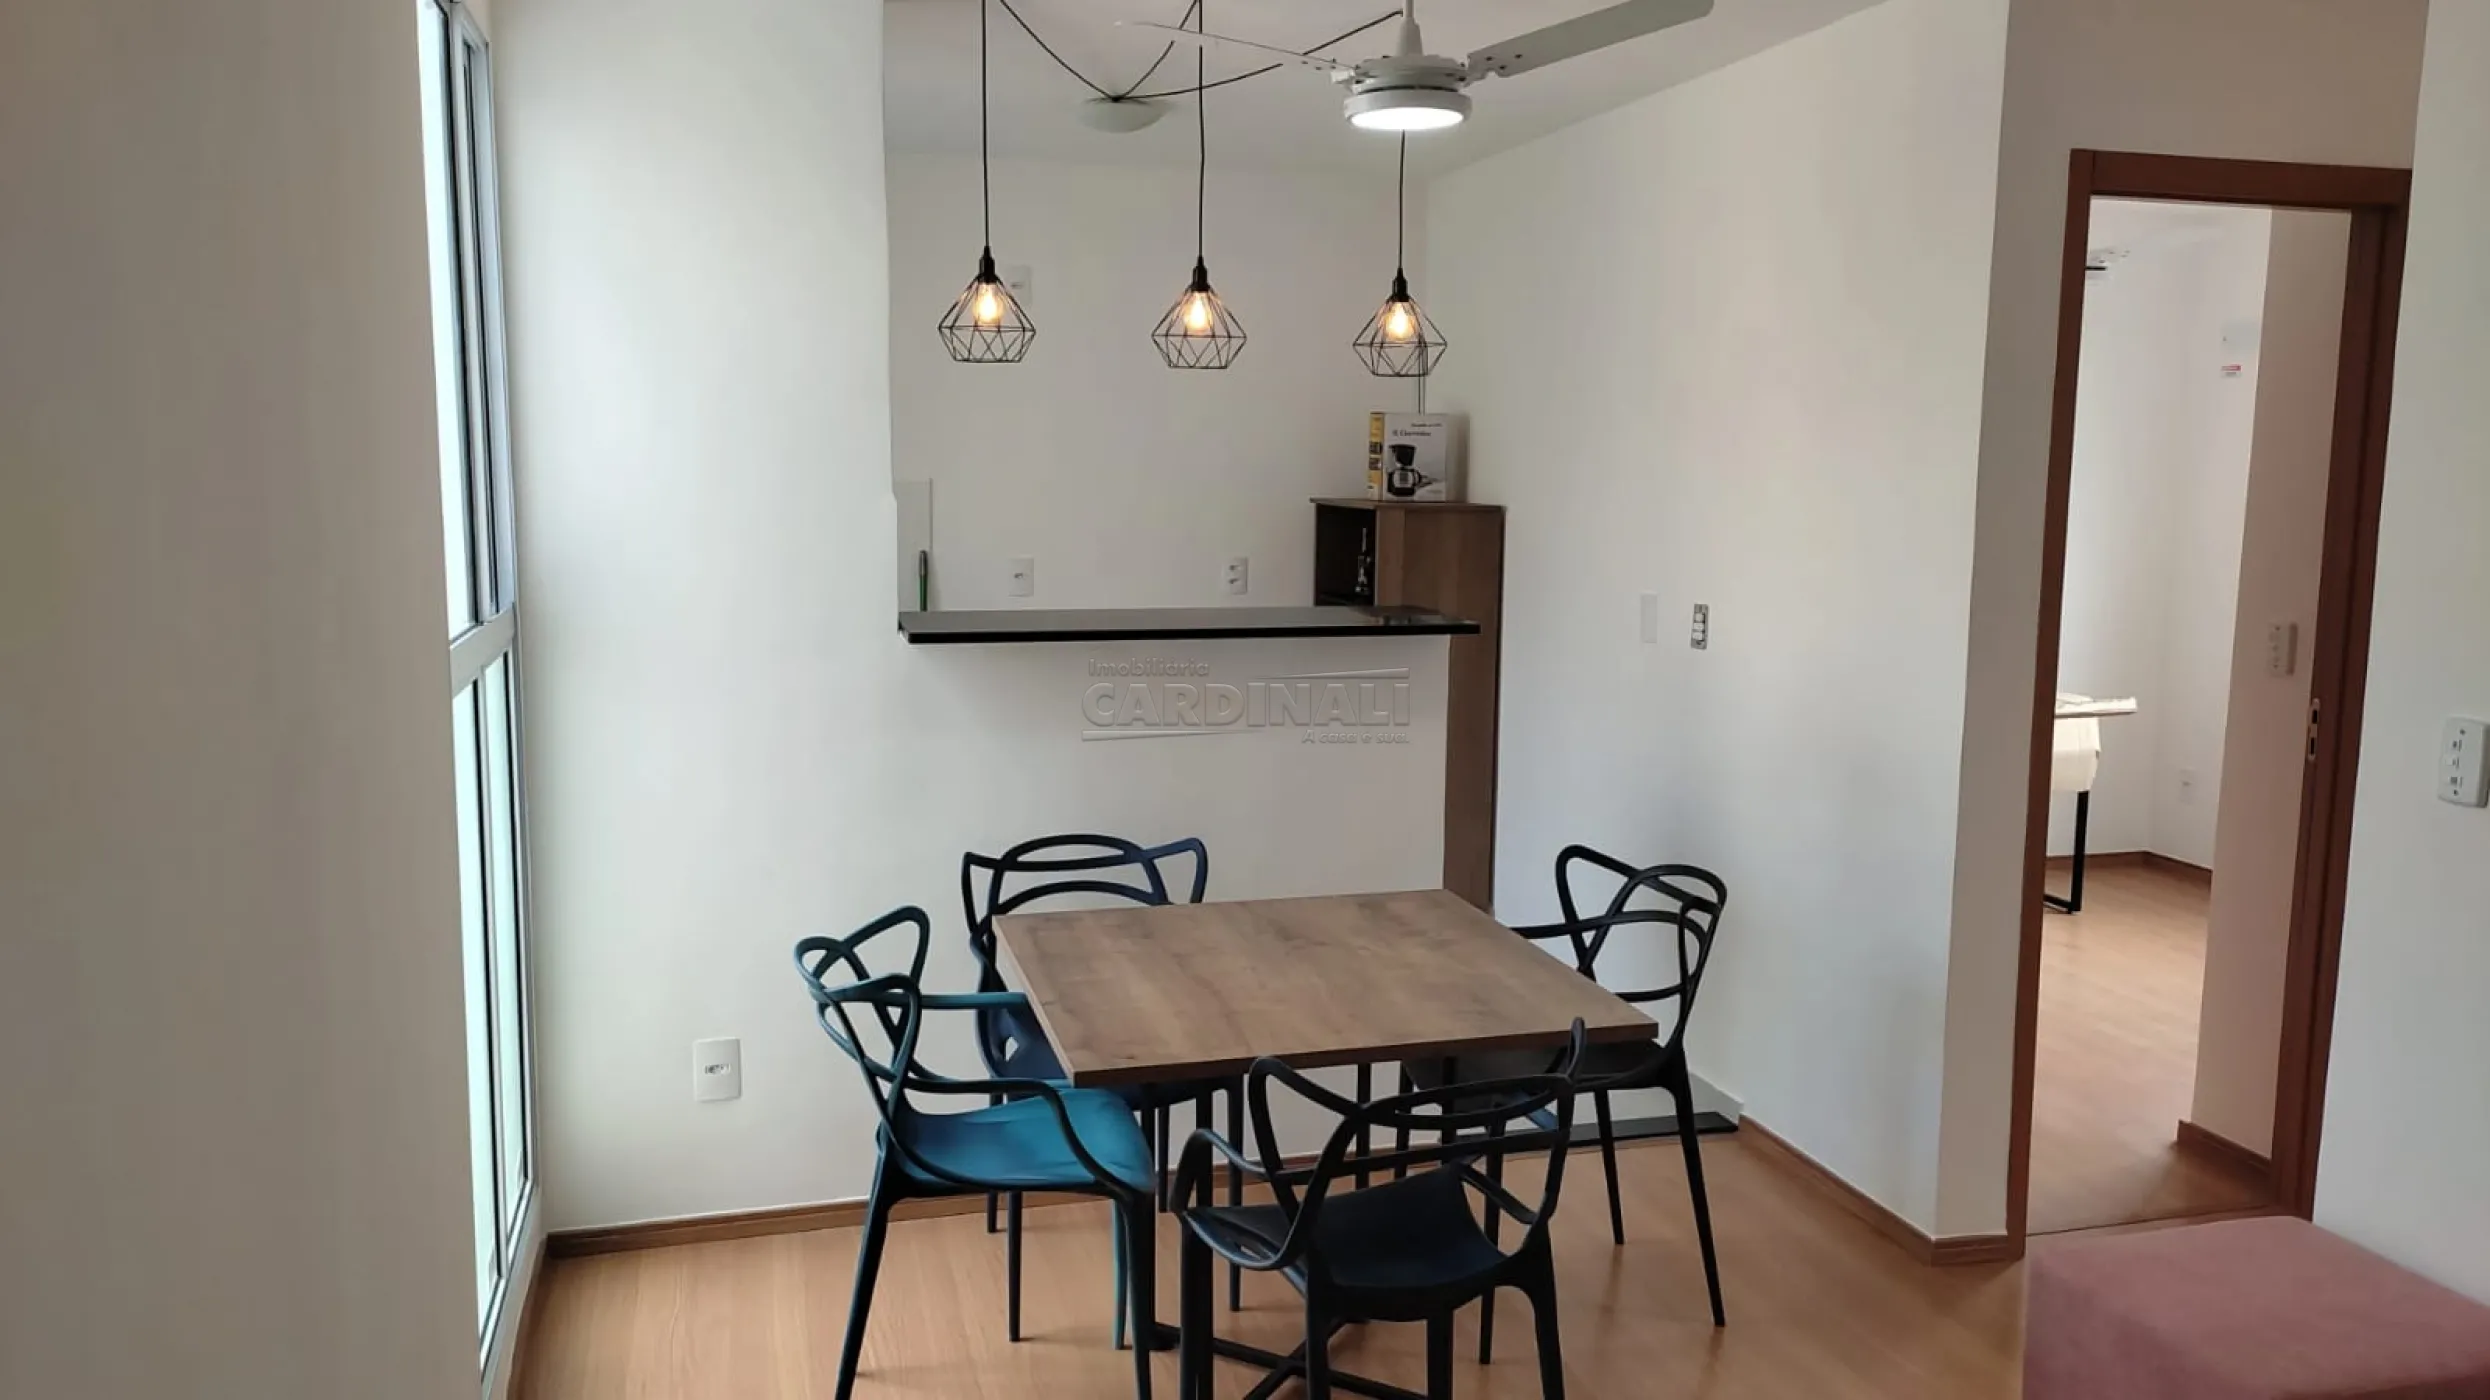 Apartamento / Padrão em São Carlos , Comprar por R$185.000,00